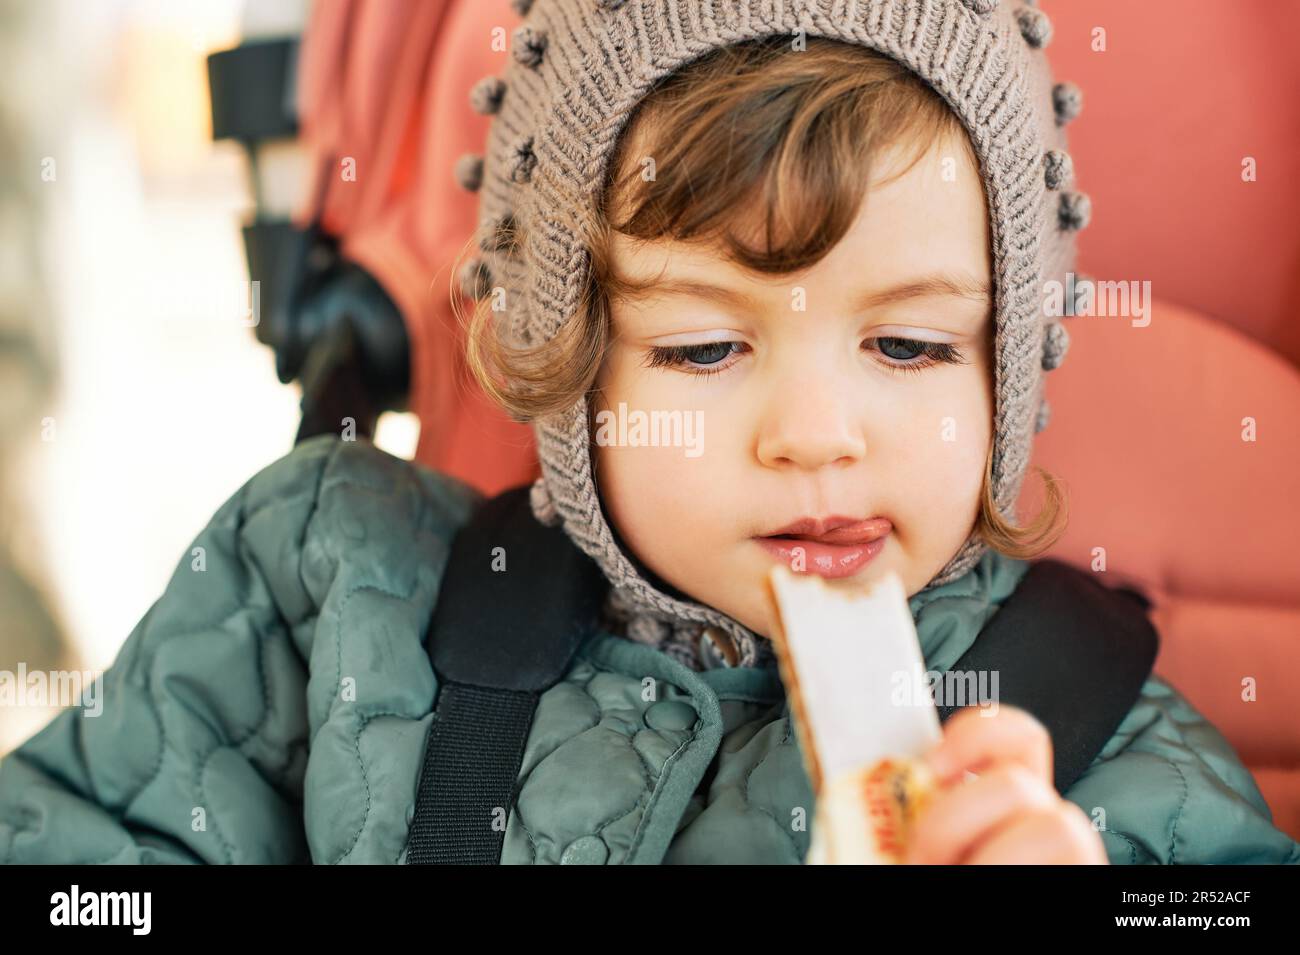 Un petit enfant heureux qui mange un bar à fruits, un en-cas sain, assis dans une poussette Banque D'Images